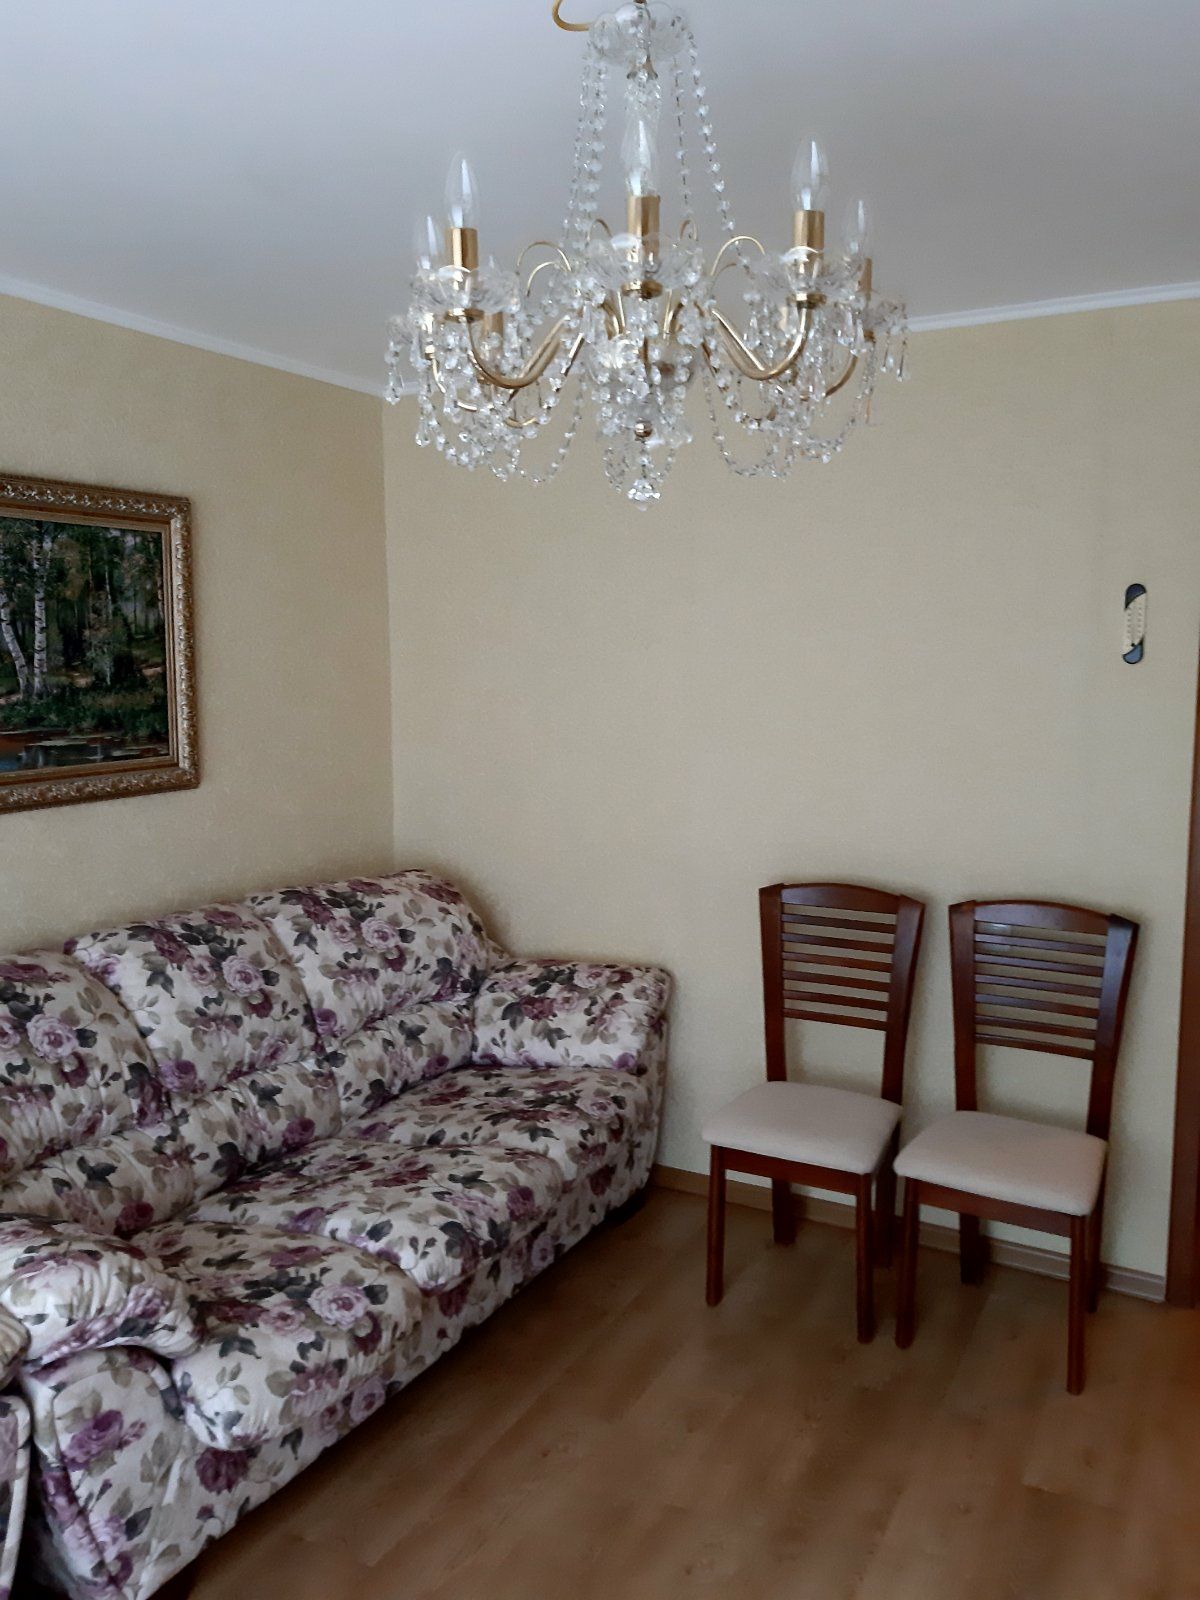 Продам квартиру 2-х комнатную идеальное место Владимира Великого 17А